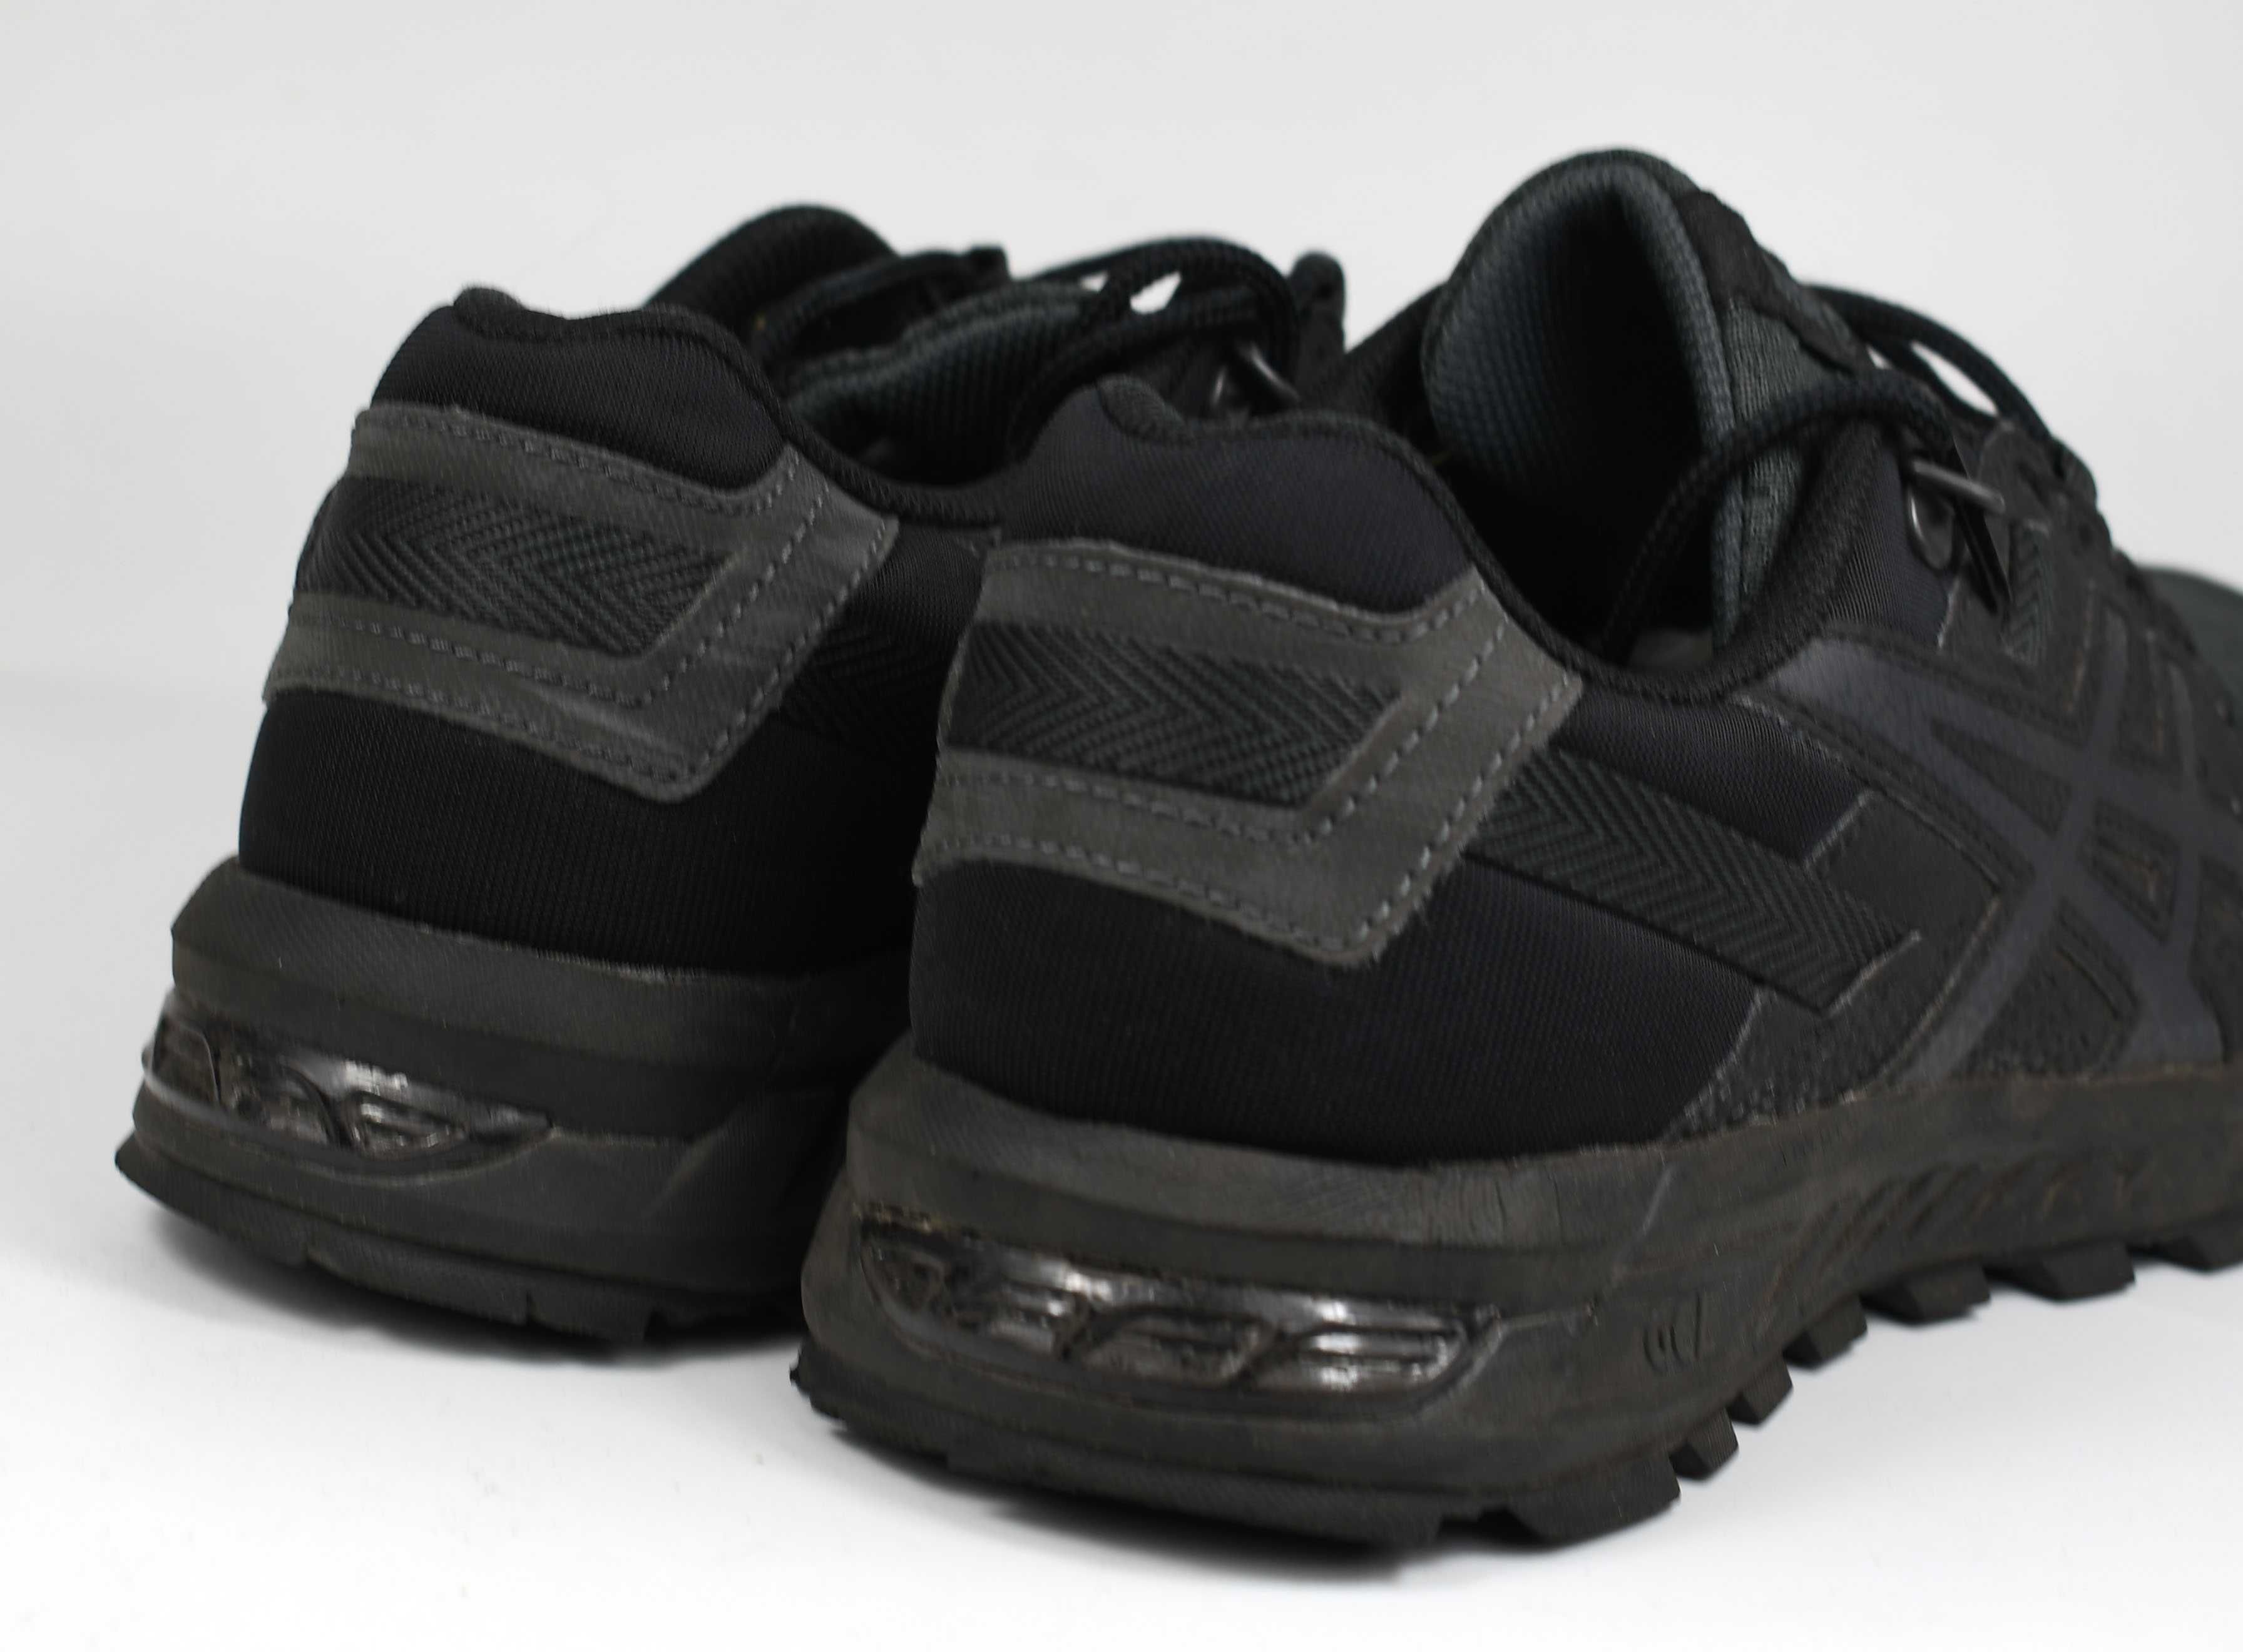 Jak nowe Sneakersy Asics Gel-Citrek 1021A204 roz. 41,5